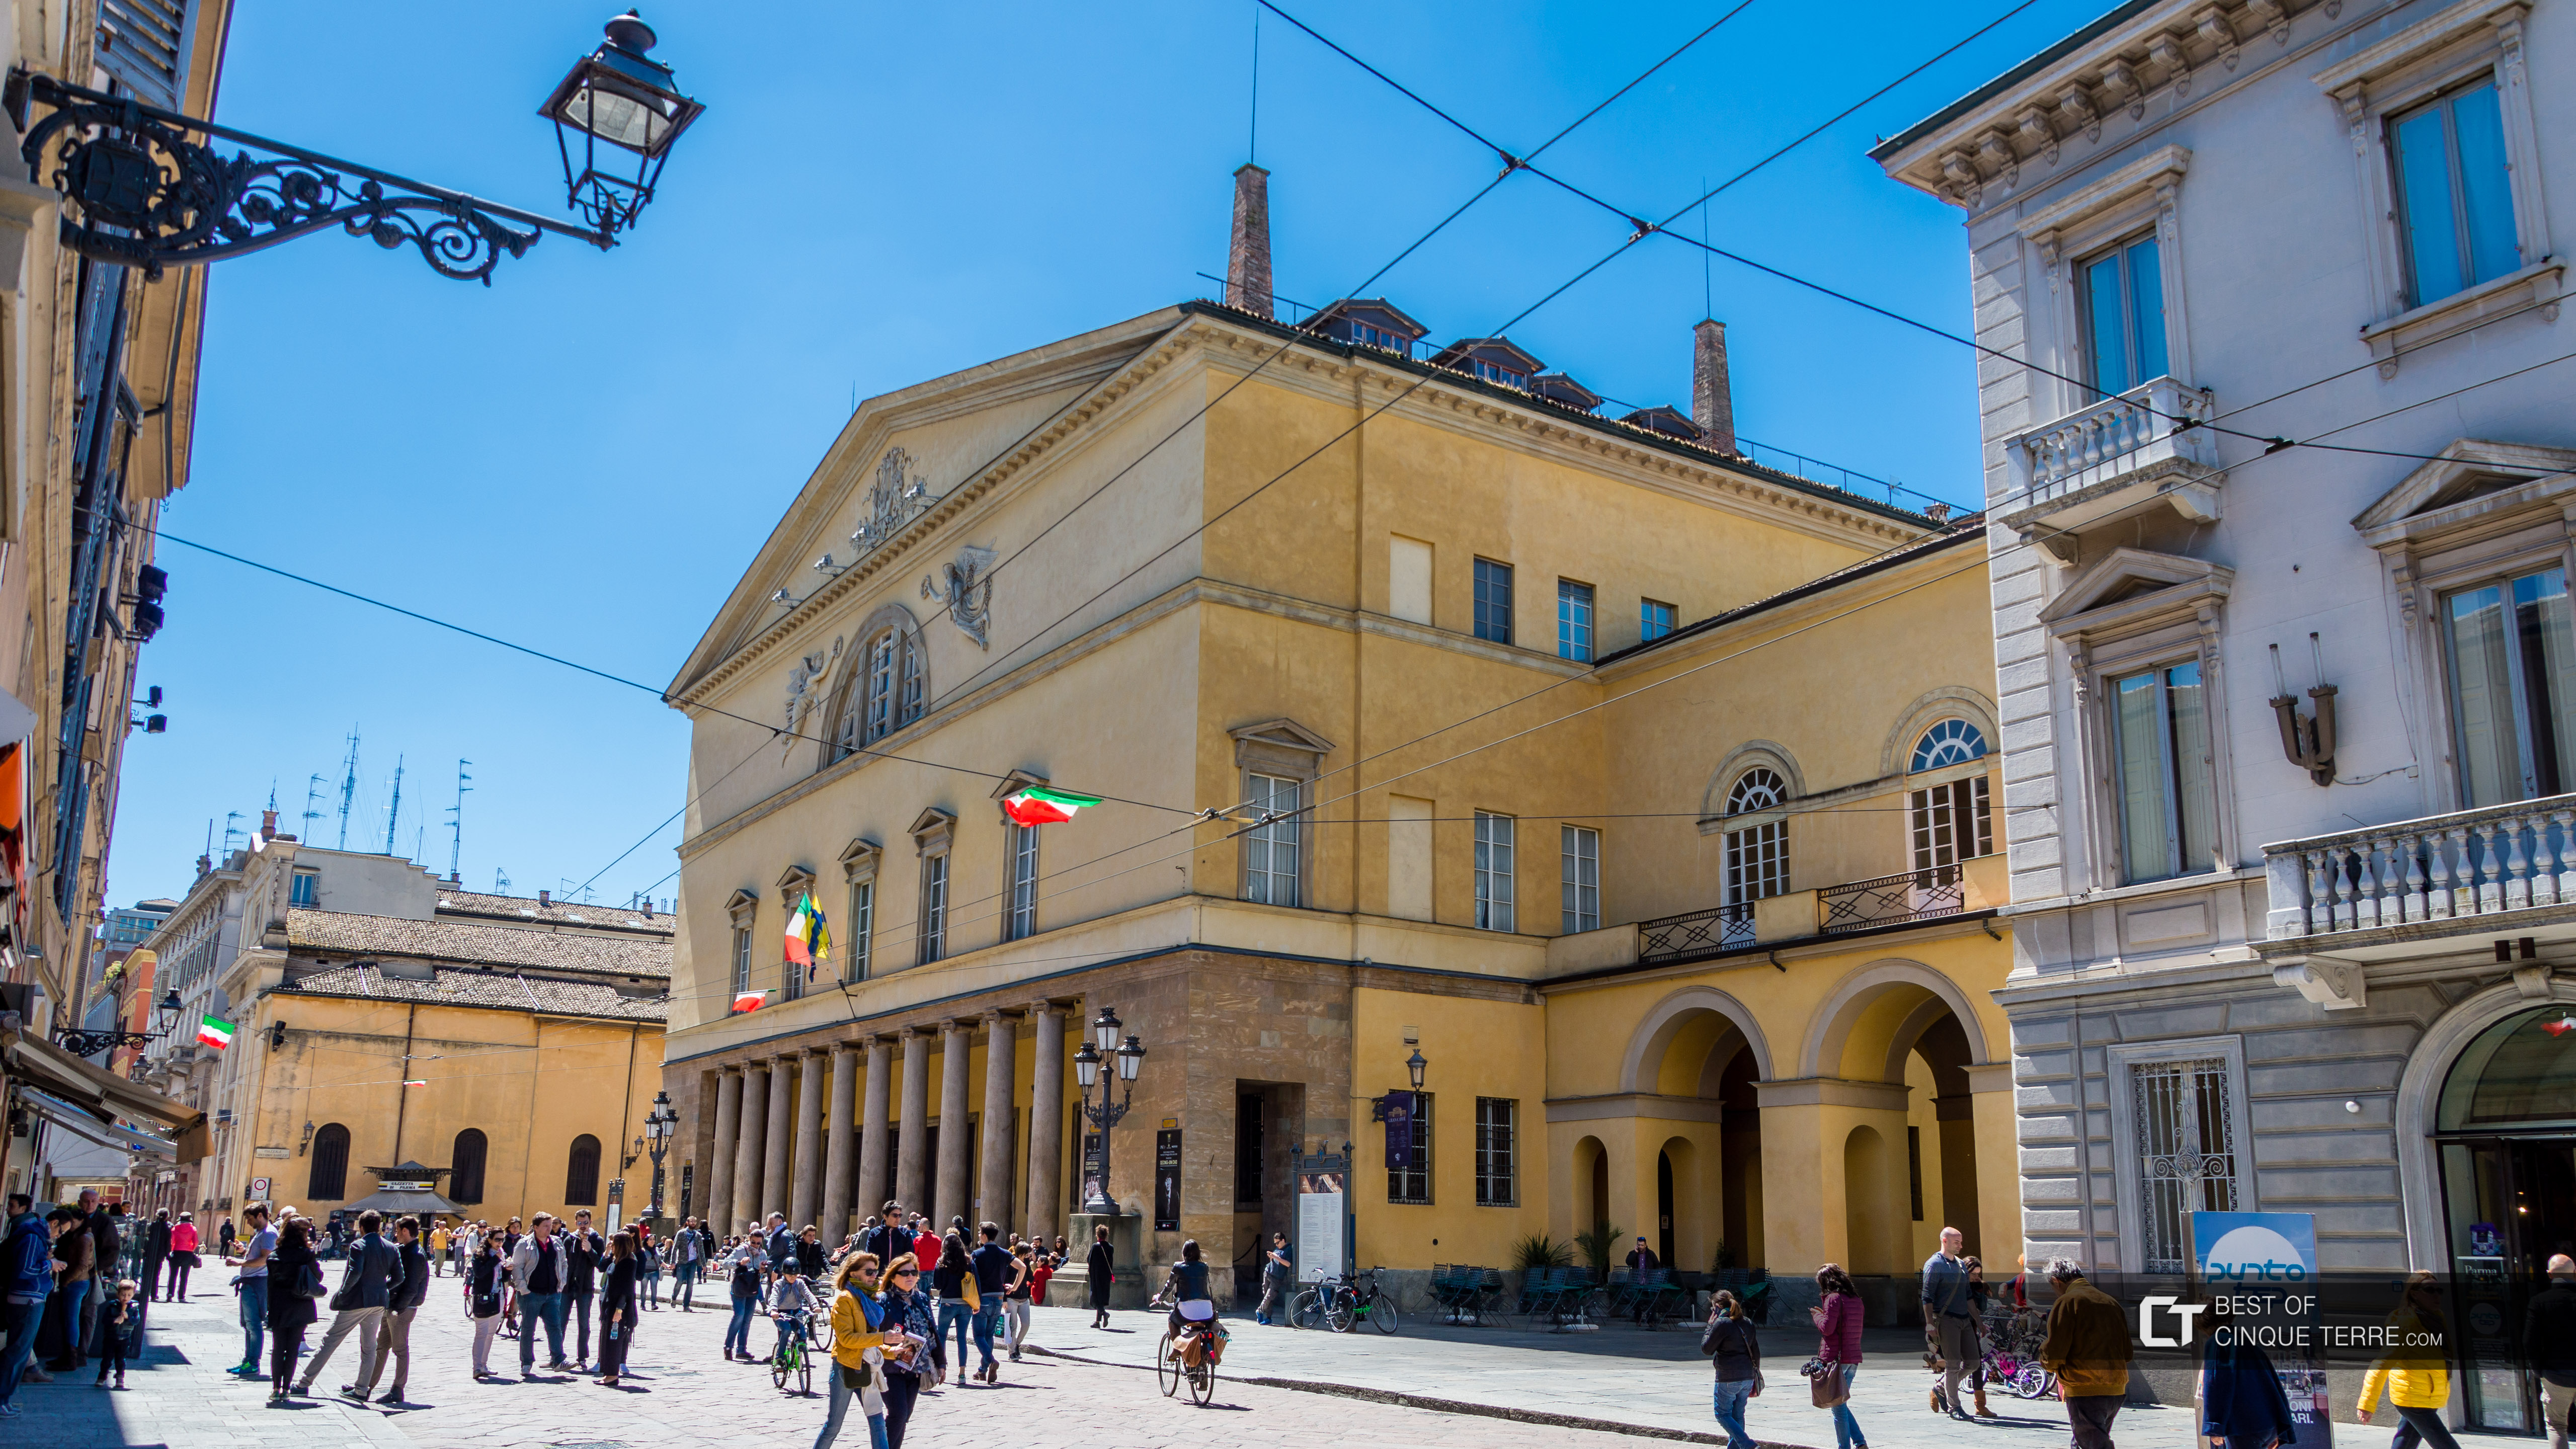 Das Teatro Regio, Parma, Italien